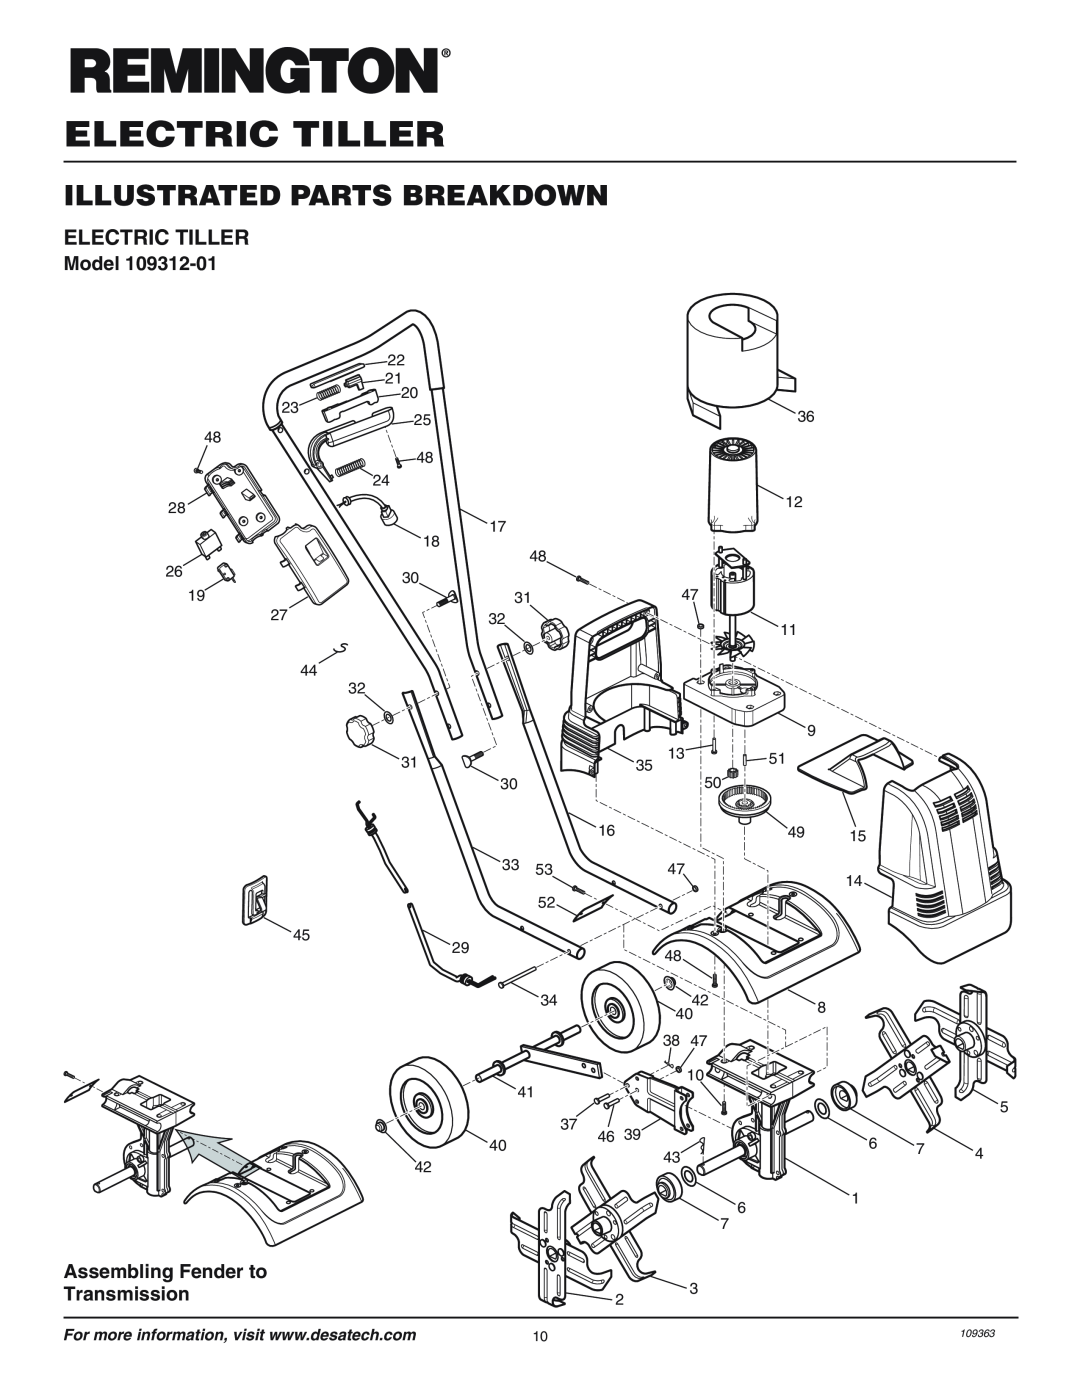 Remington 109312-01 owner manual Illustrated Parts Breakdown, Electric Tiller, Model, Assembling Fender to Transmission 